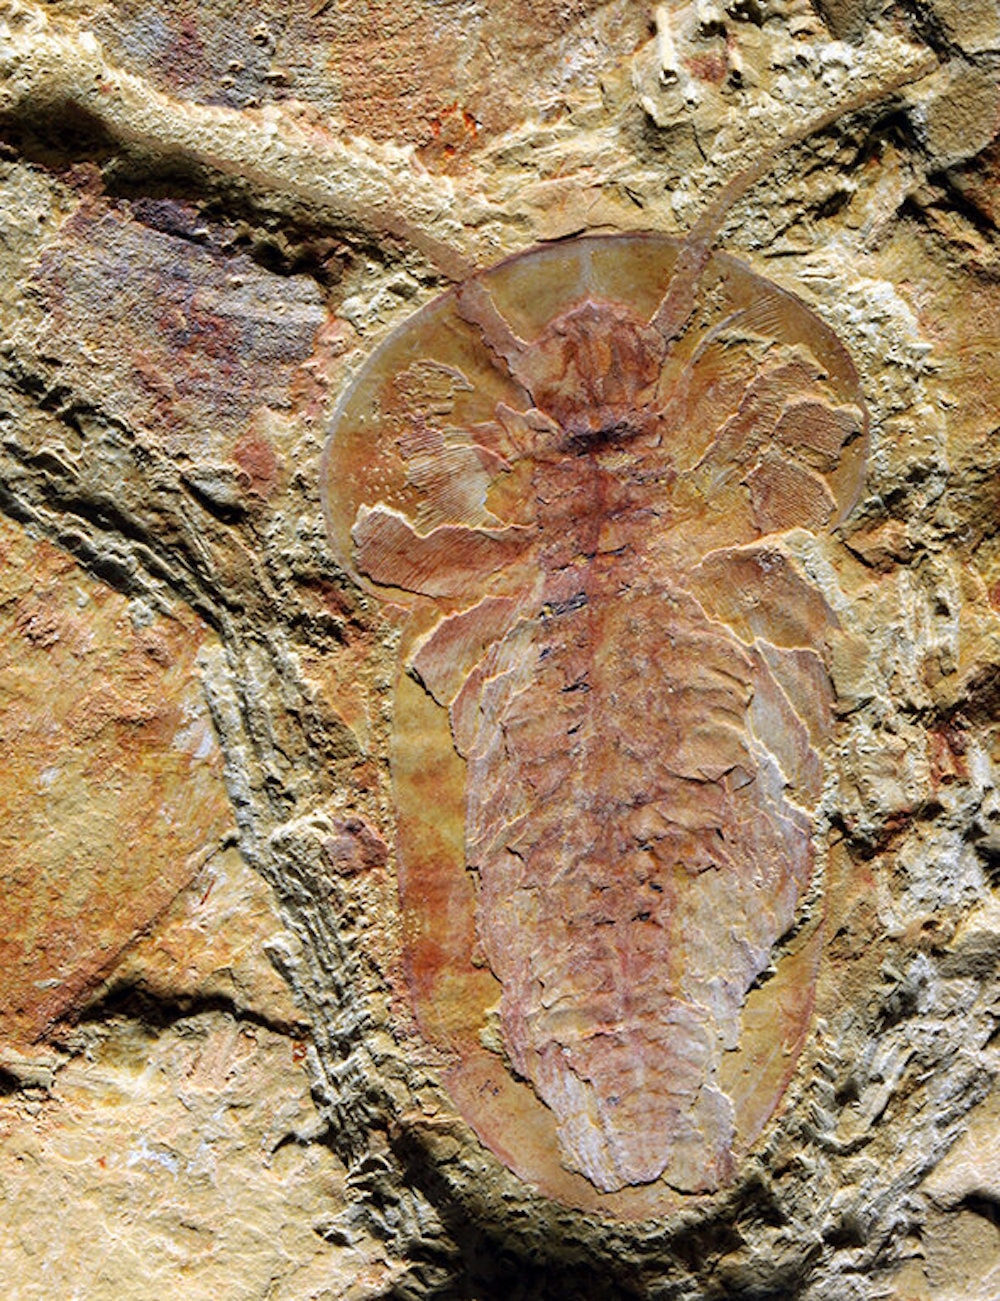 Arthropod fossil